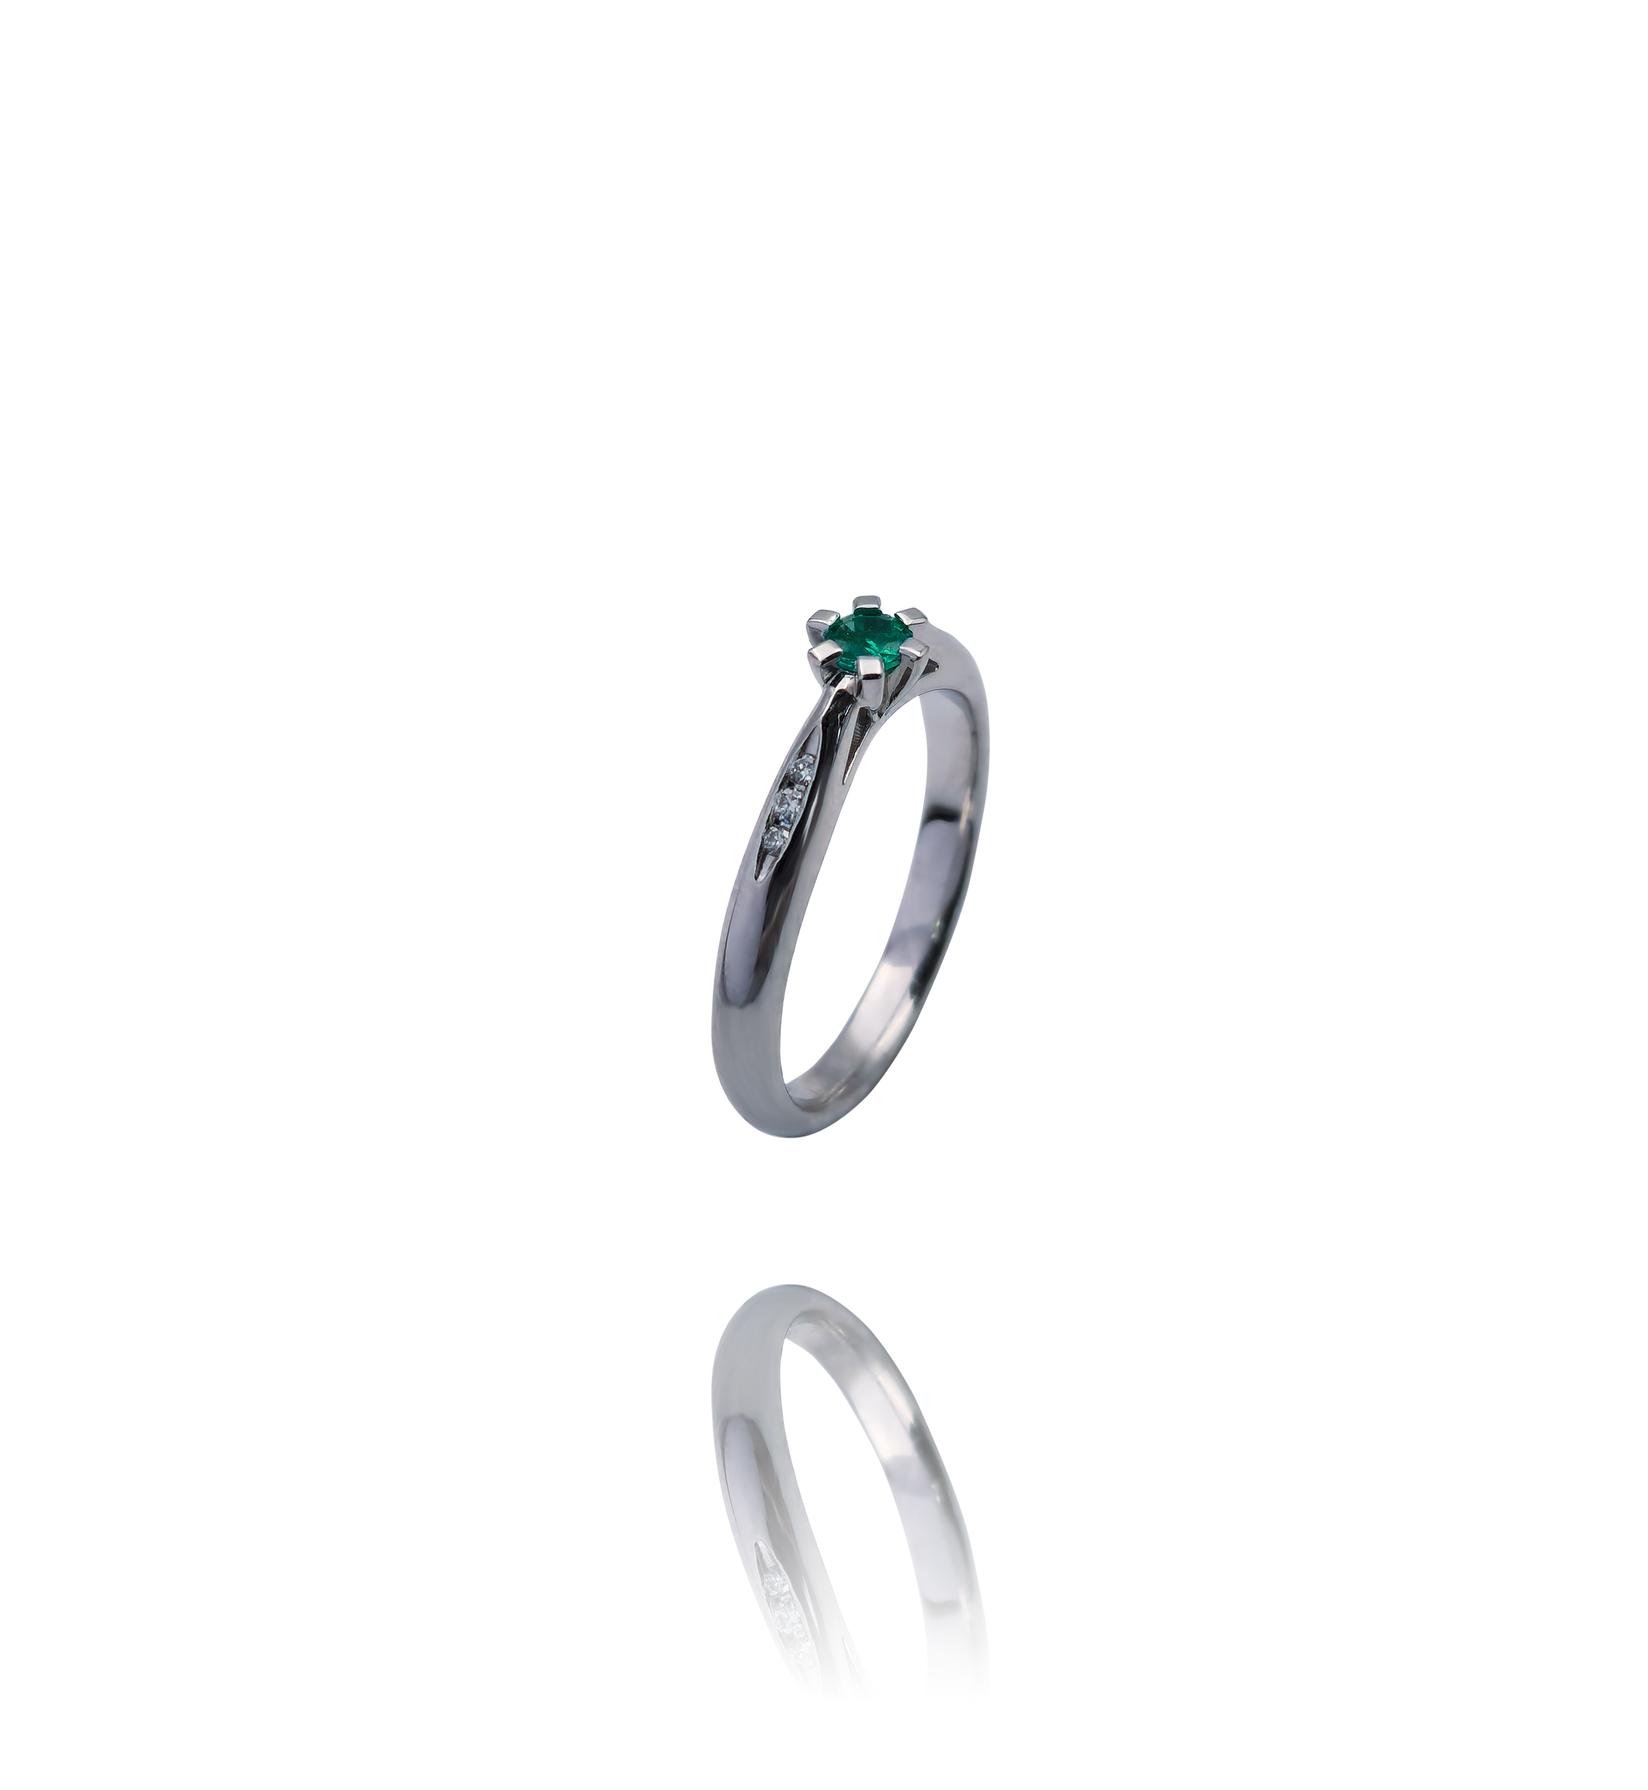 Selected image for Ženski prsten od Belog zlata sa Brilijantima i Smaragdom, 585, 19mm